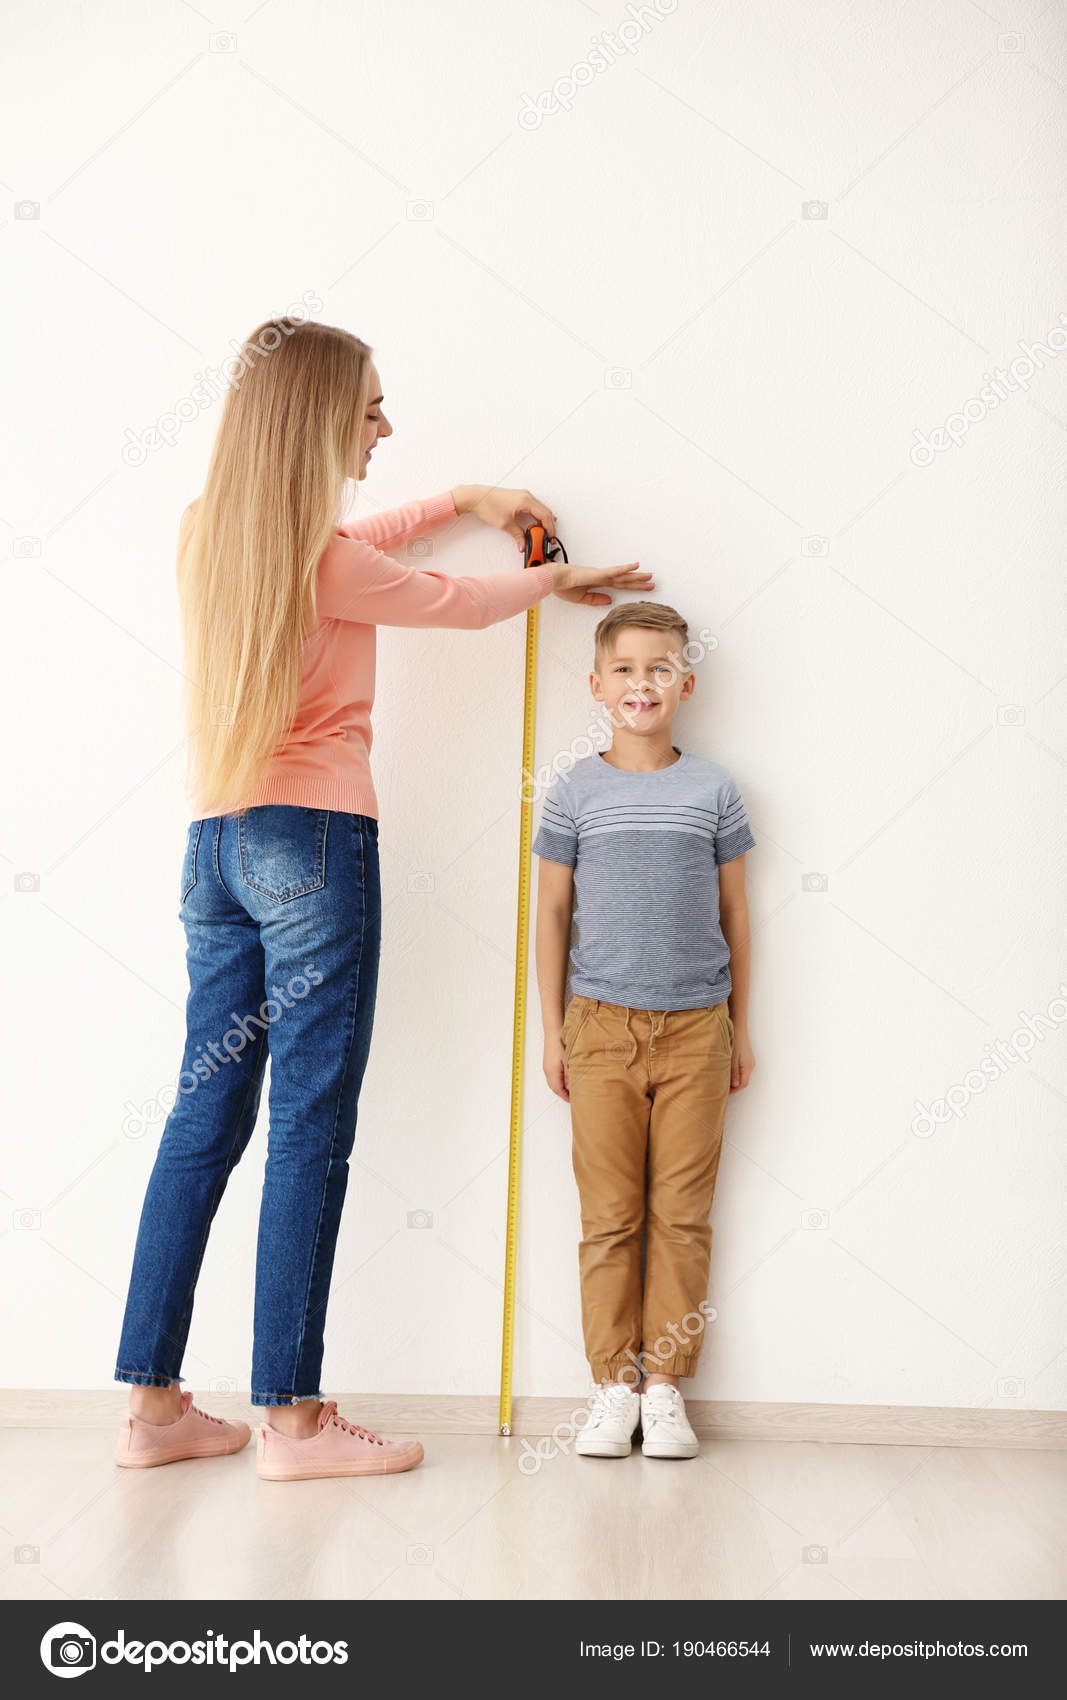 Toddynho medindo a altura